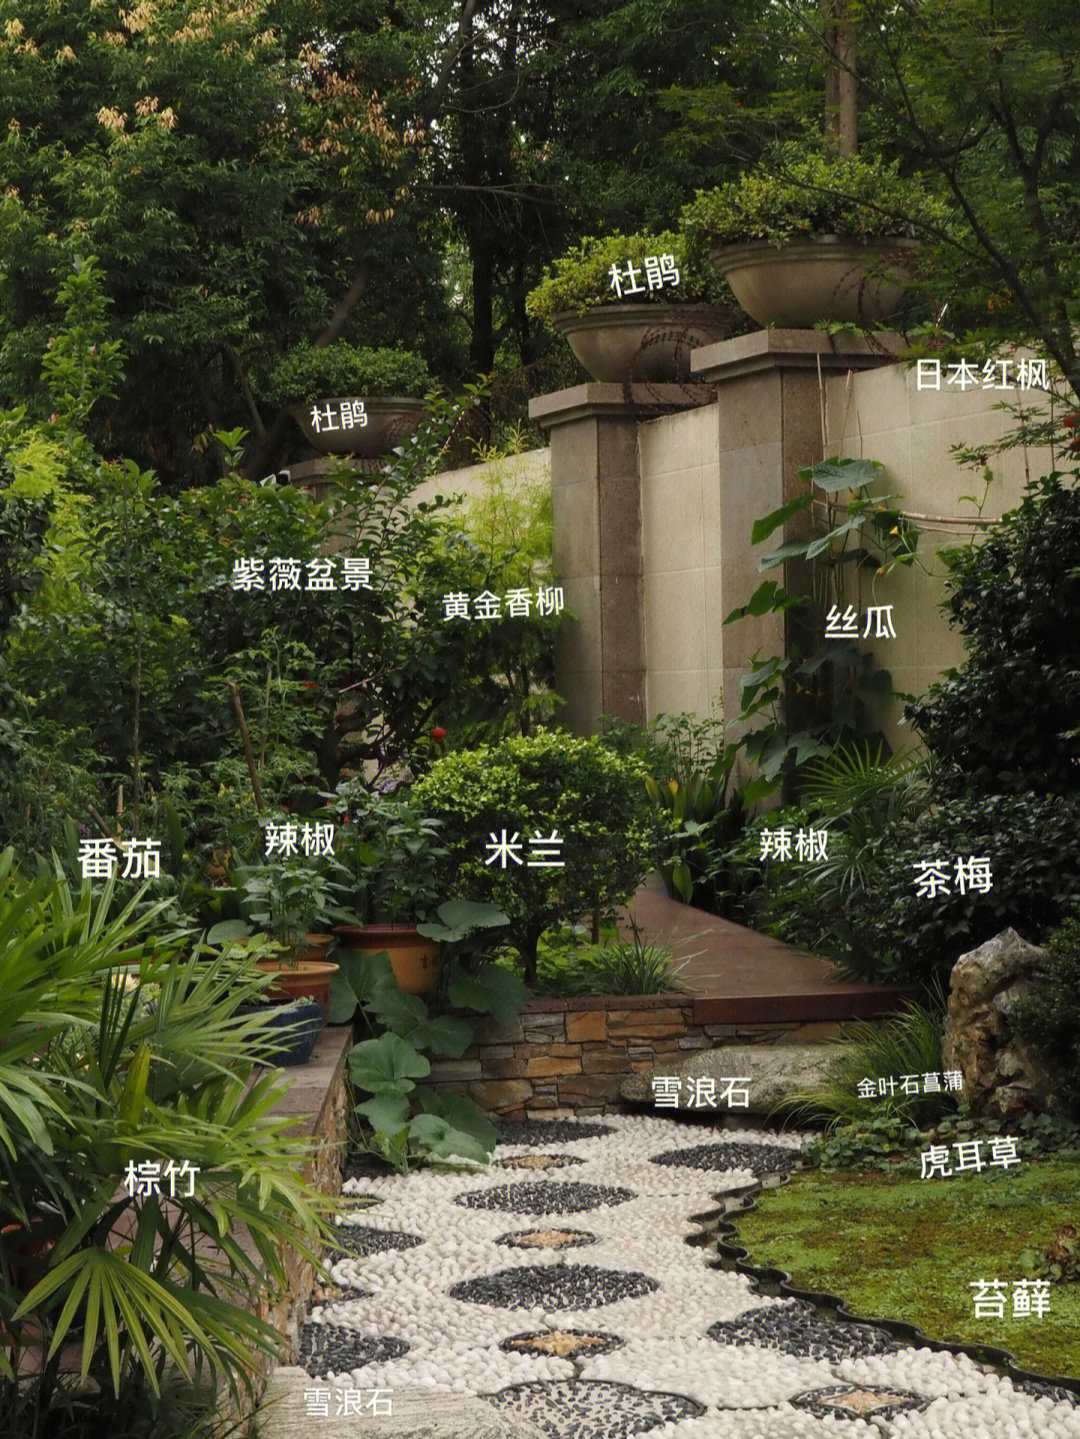 庭院植物分布图图片